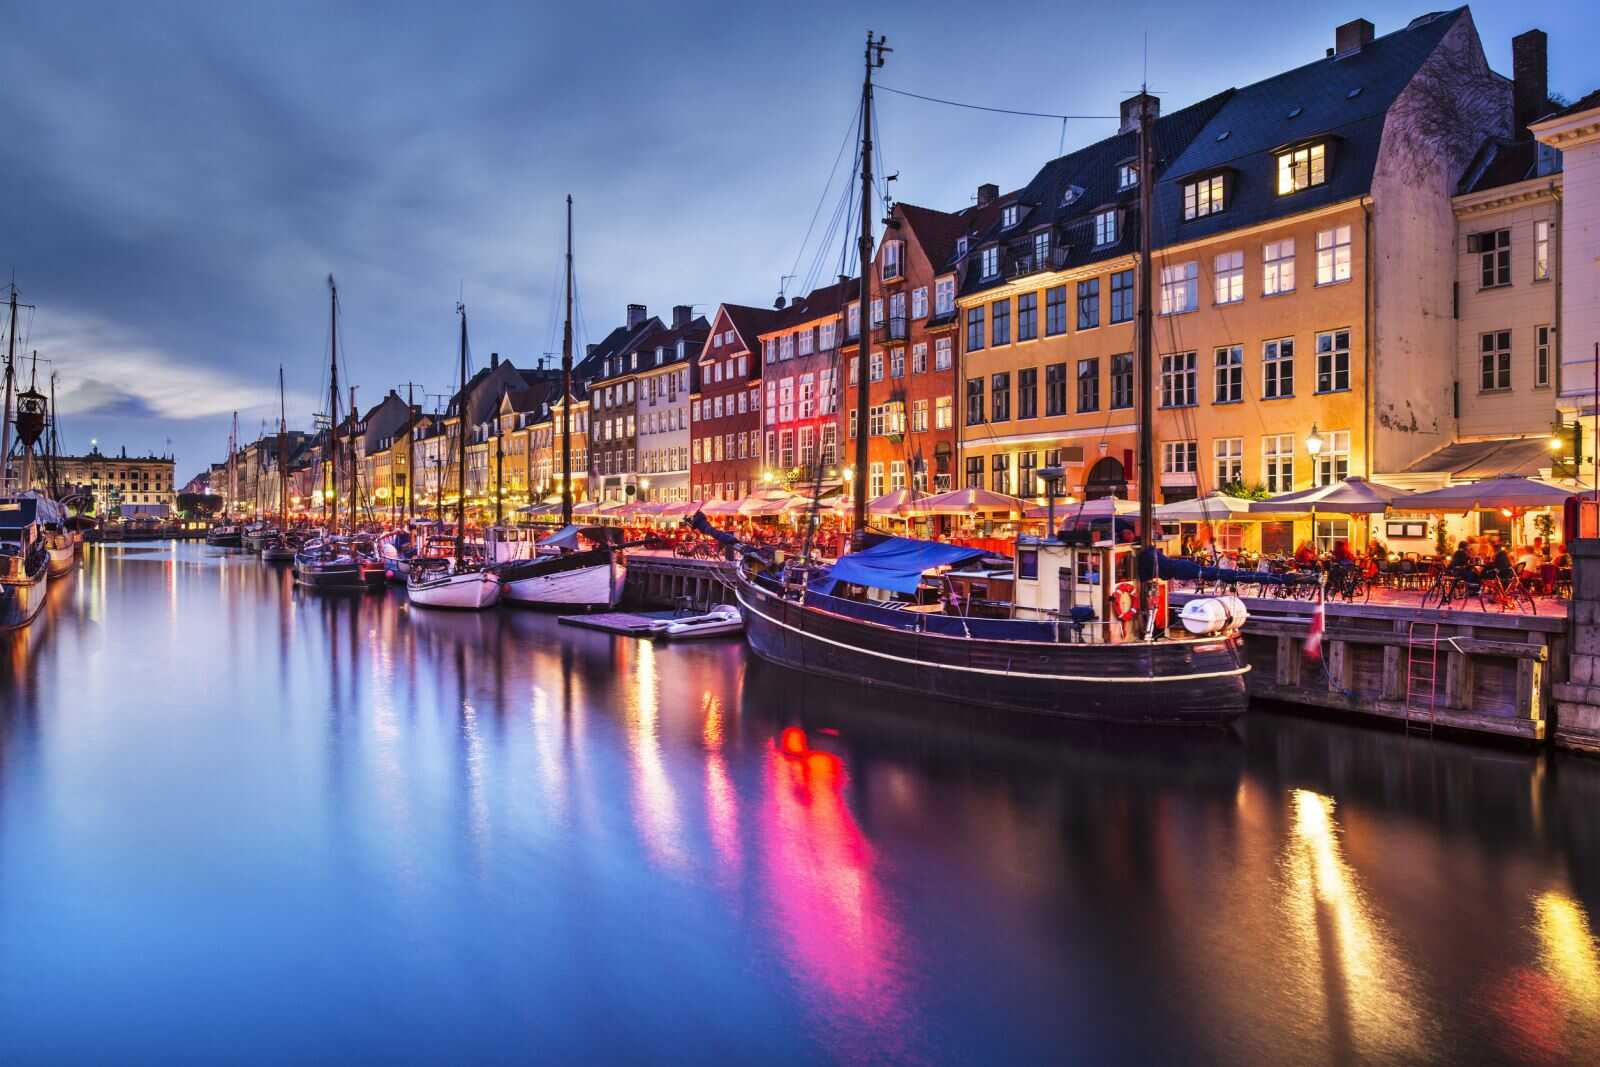 Du lịch Châu Âu - Đan Mạch - Na Uy - Thụy Điển từ Sài Gòn giá tốt